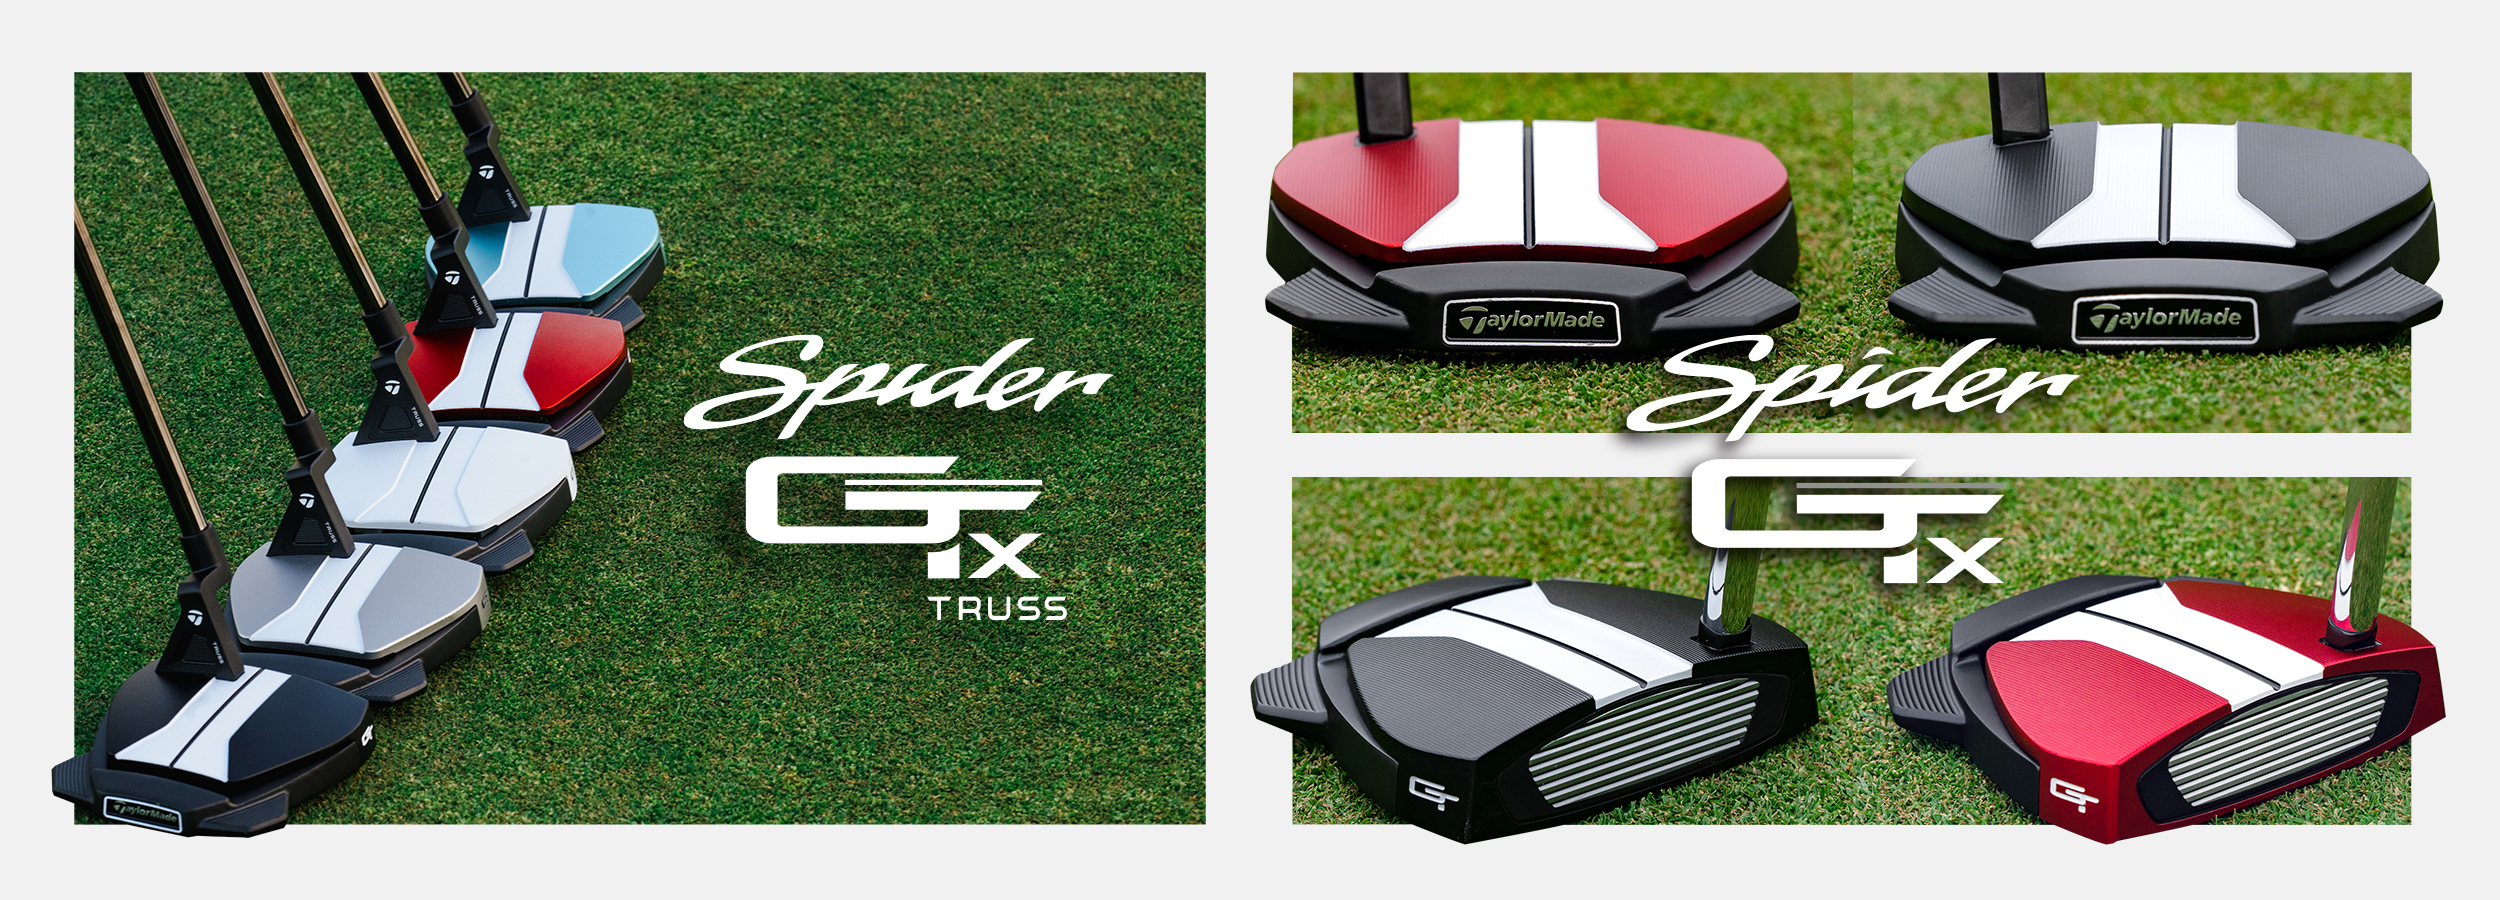 スパイダーGT X ホワイト トラスヒール パター | SPIDER GT X WHITE TRUSS | TaylorMade Golf |  テーラーメイド ゴルフ公式サイト